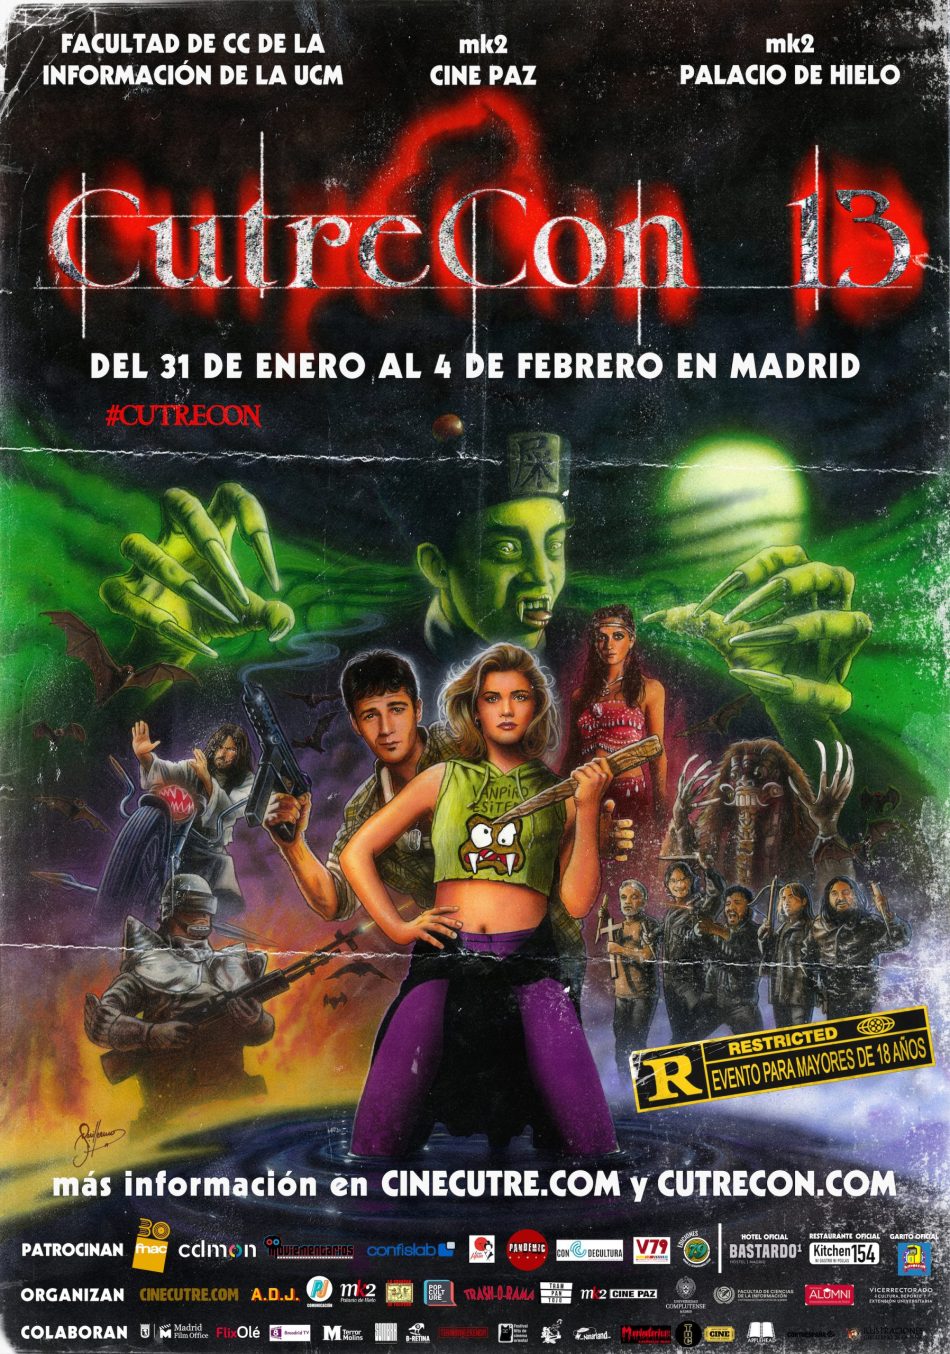 Los peores vampiros del cine protagonizan la decimotercera edición de CutreCon, el Festival Internacional de Cine Cutre de Madrid